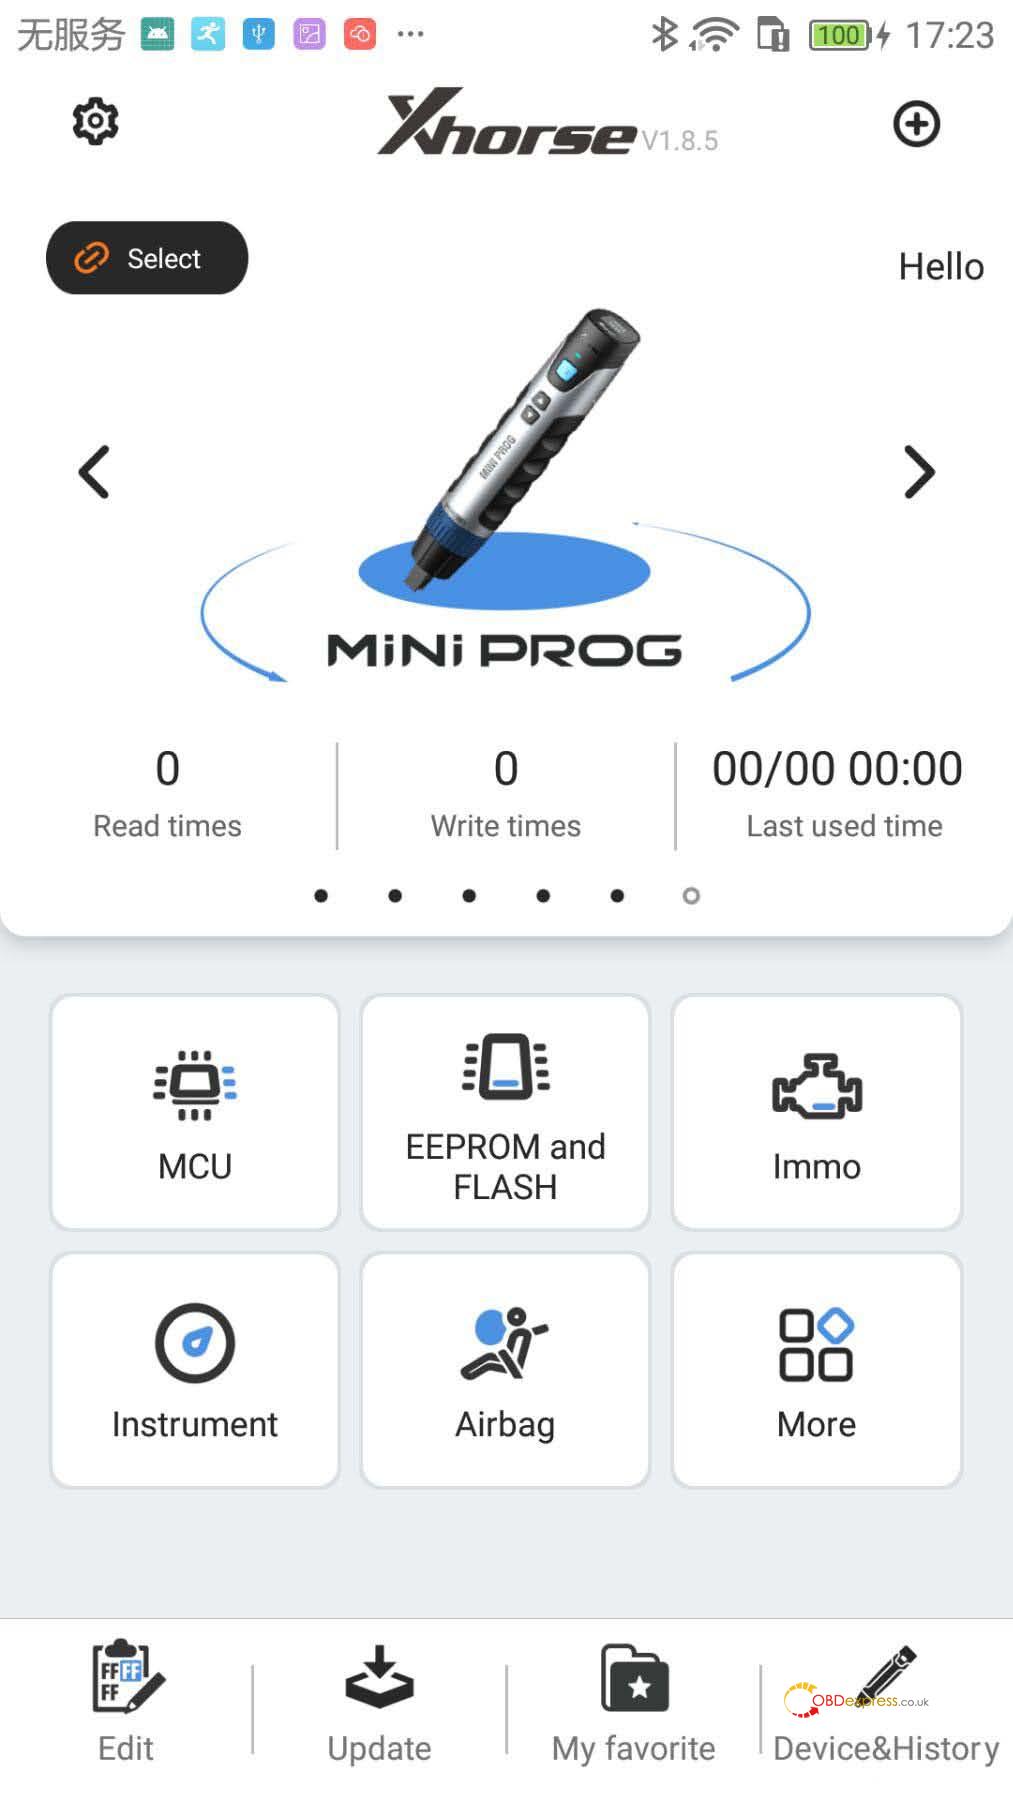 xhorse vvdi mini prog user manual 05 - Xhorse VVDI Mini Prog User Manual (Official) -